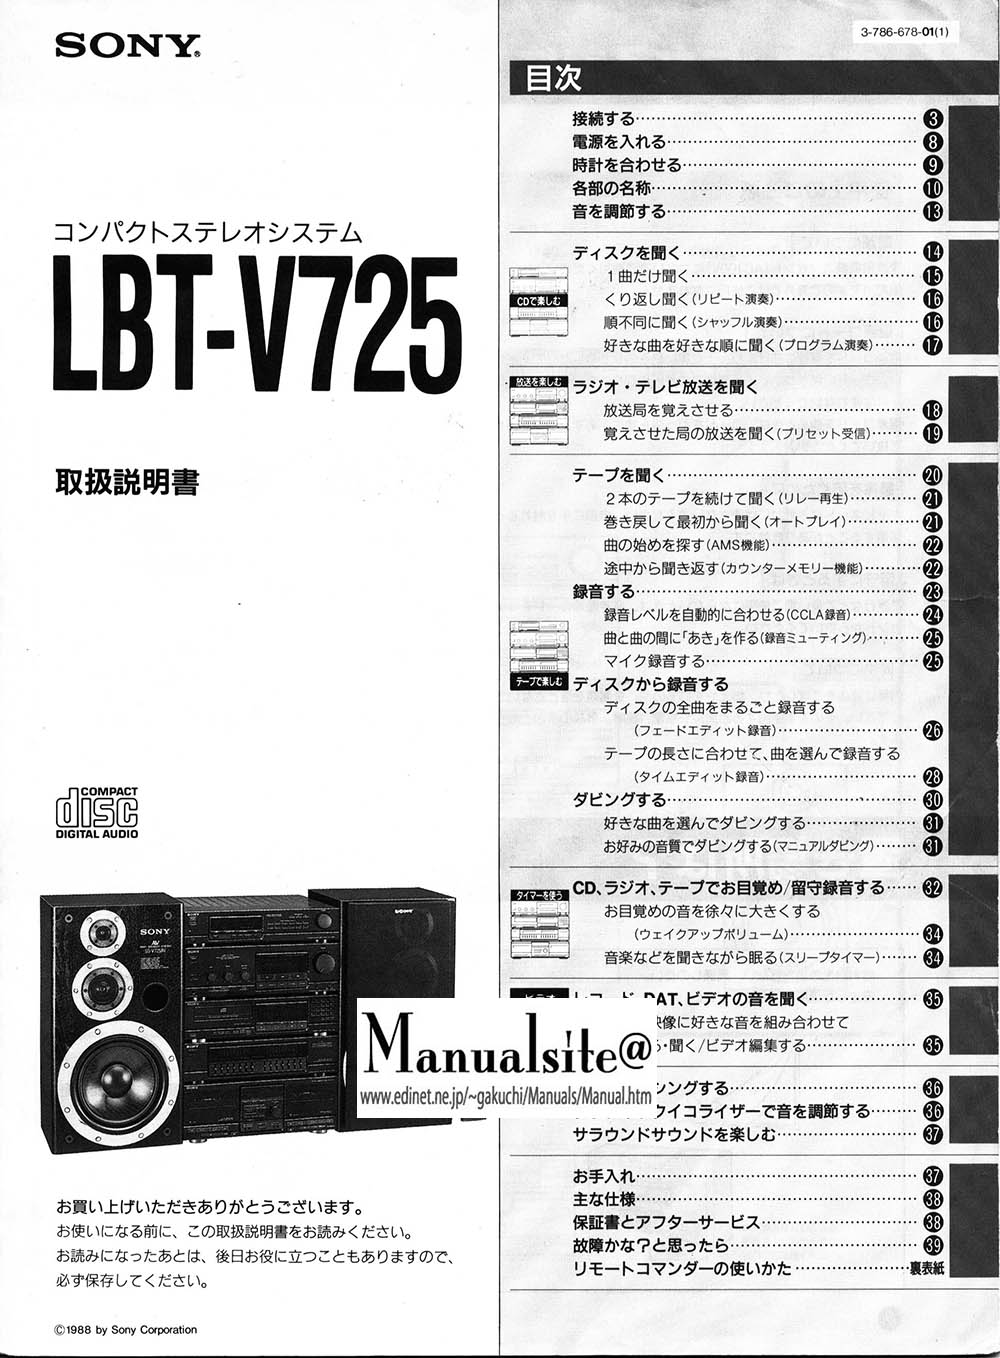 マニュアルサイト詳細館1号館: LBT-V725